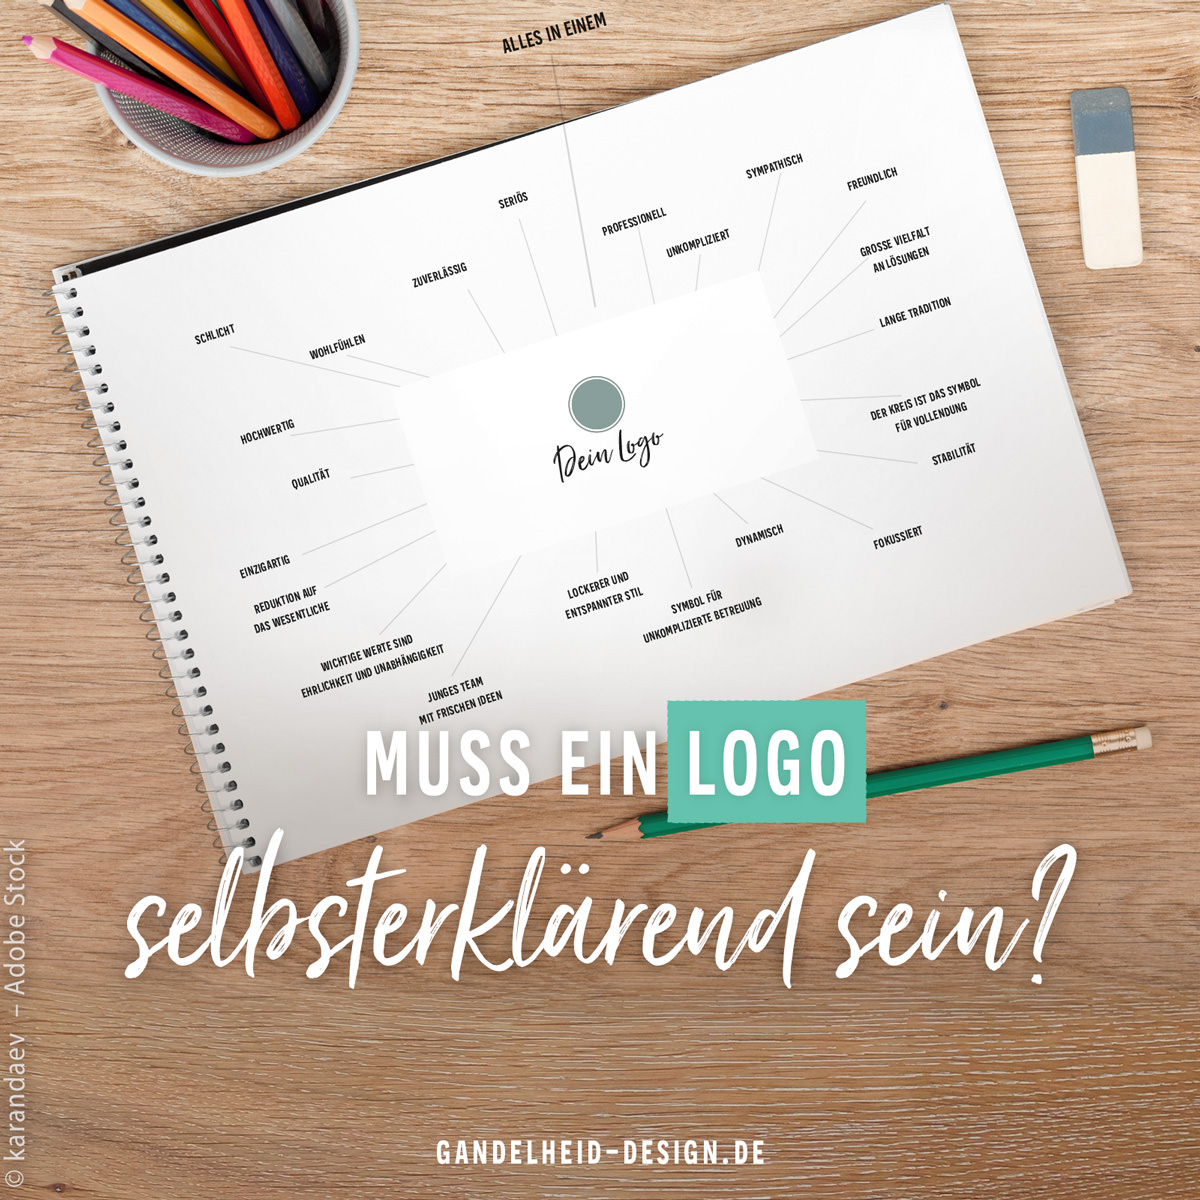 Blog-Artikel: Muss ein Logo eigentlich selbsterklärend sein?